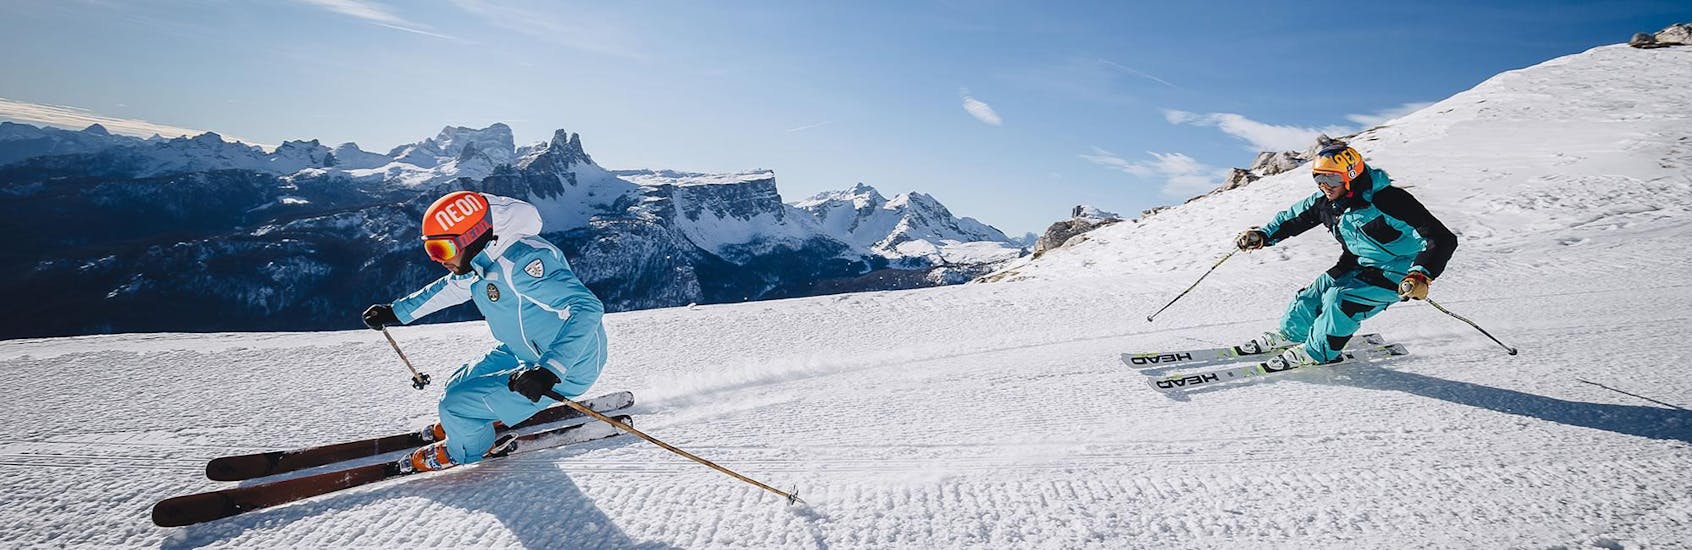 Een skileraar leidt de weg naar beneden van een skipiste in het skigebied van Cortina d'Ampezzo tijdens een van de Privé Skilessen voor Volwassenen - Beginner georganiseerd door de skischool Scuola di Sci e Snowboard Cristallo Cortina.